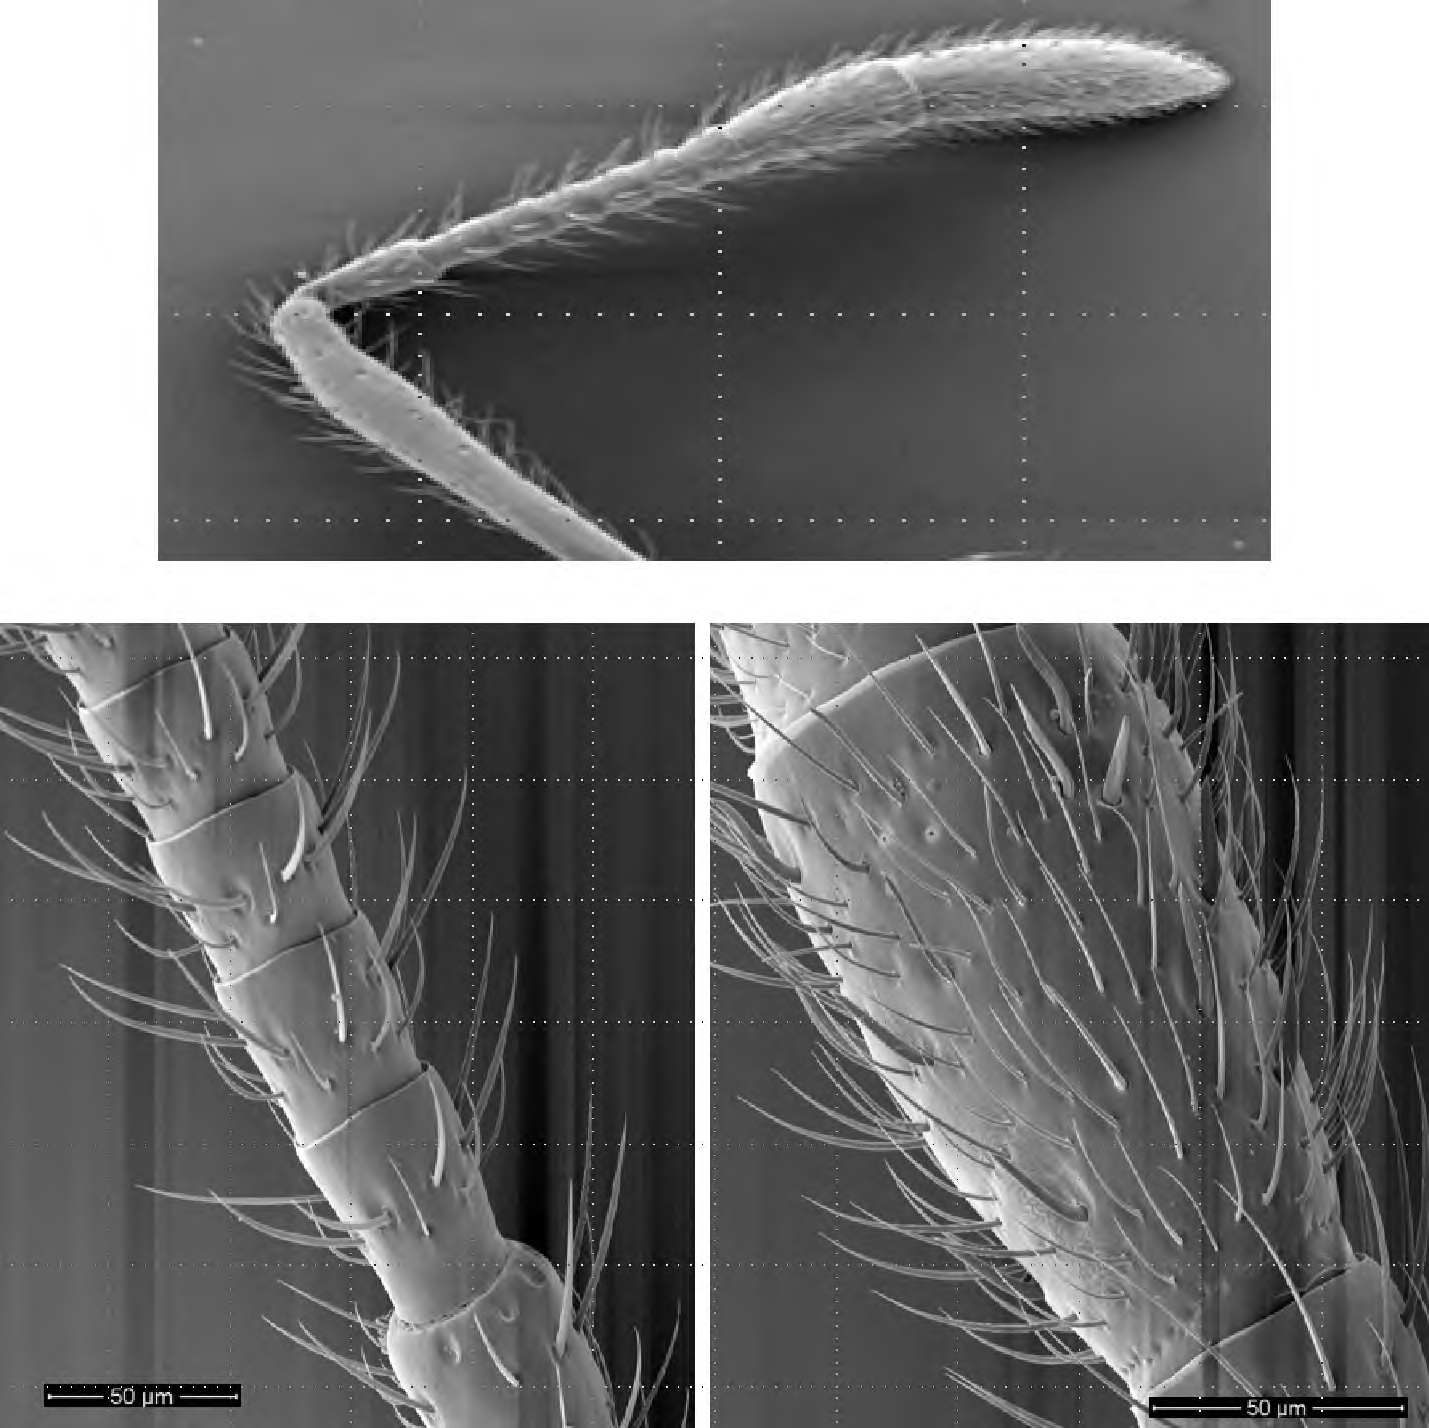 주사전자현미경 관찰을 통한 붉은불개미의 안테나 전체구조(상), 곤봉부에서 3번째~8번째마디(아래 왼쪽), 곤봉부 2번째마디(아래 오른쪽)